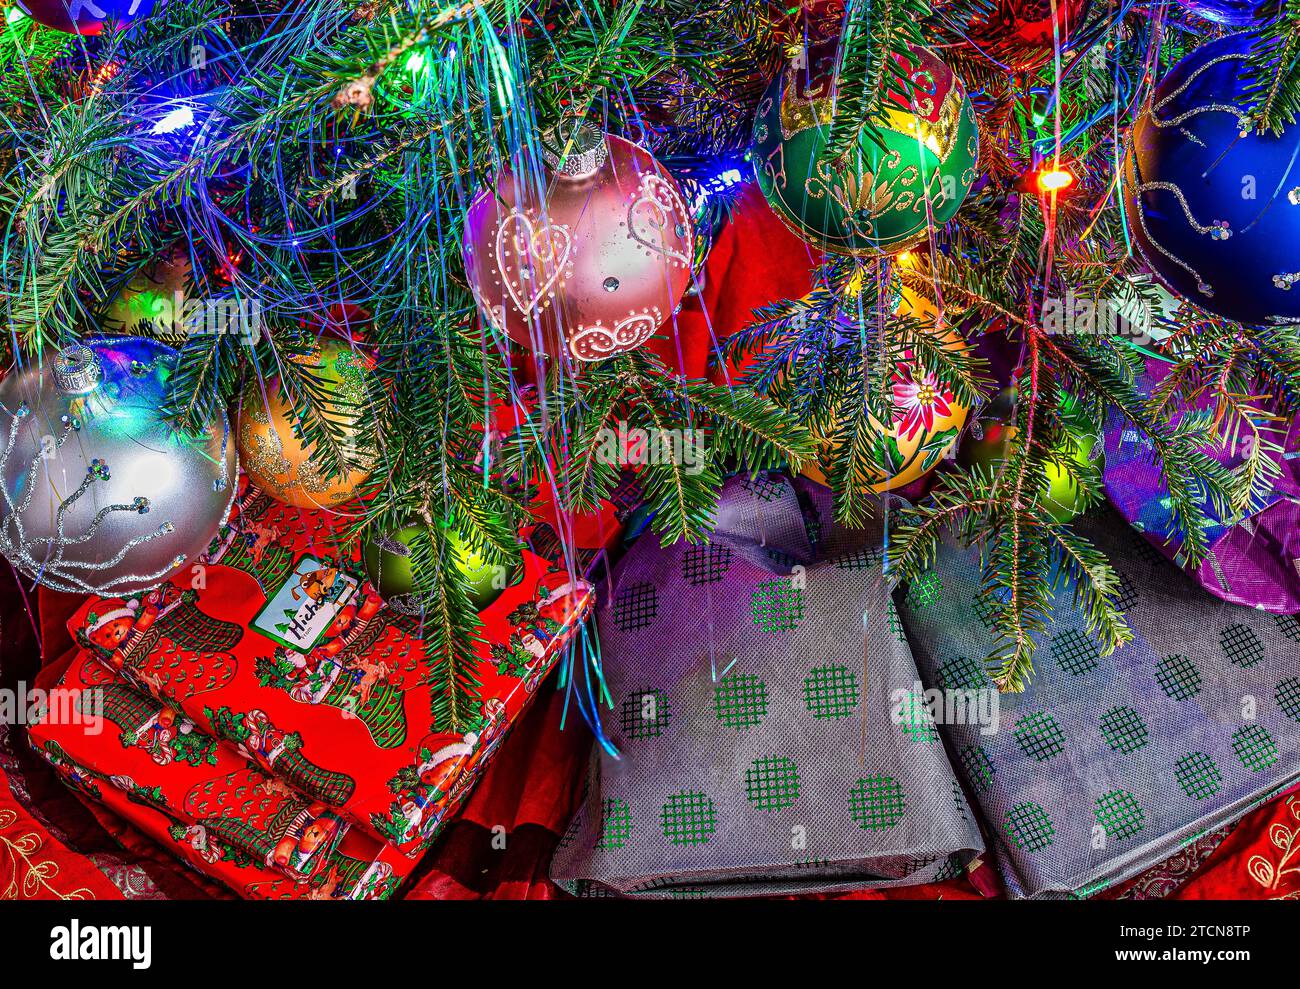 Geschenke unter dem Weihnachtsbaum. Zweige mit Dekoration und Weihnachtskugeln. Weihnachtsbaumbeleuchtung. Stockfoto